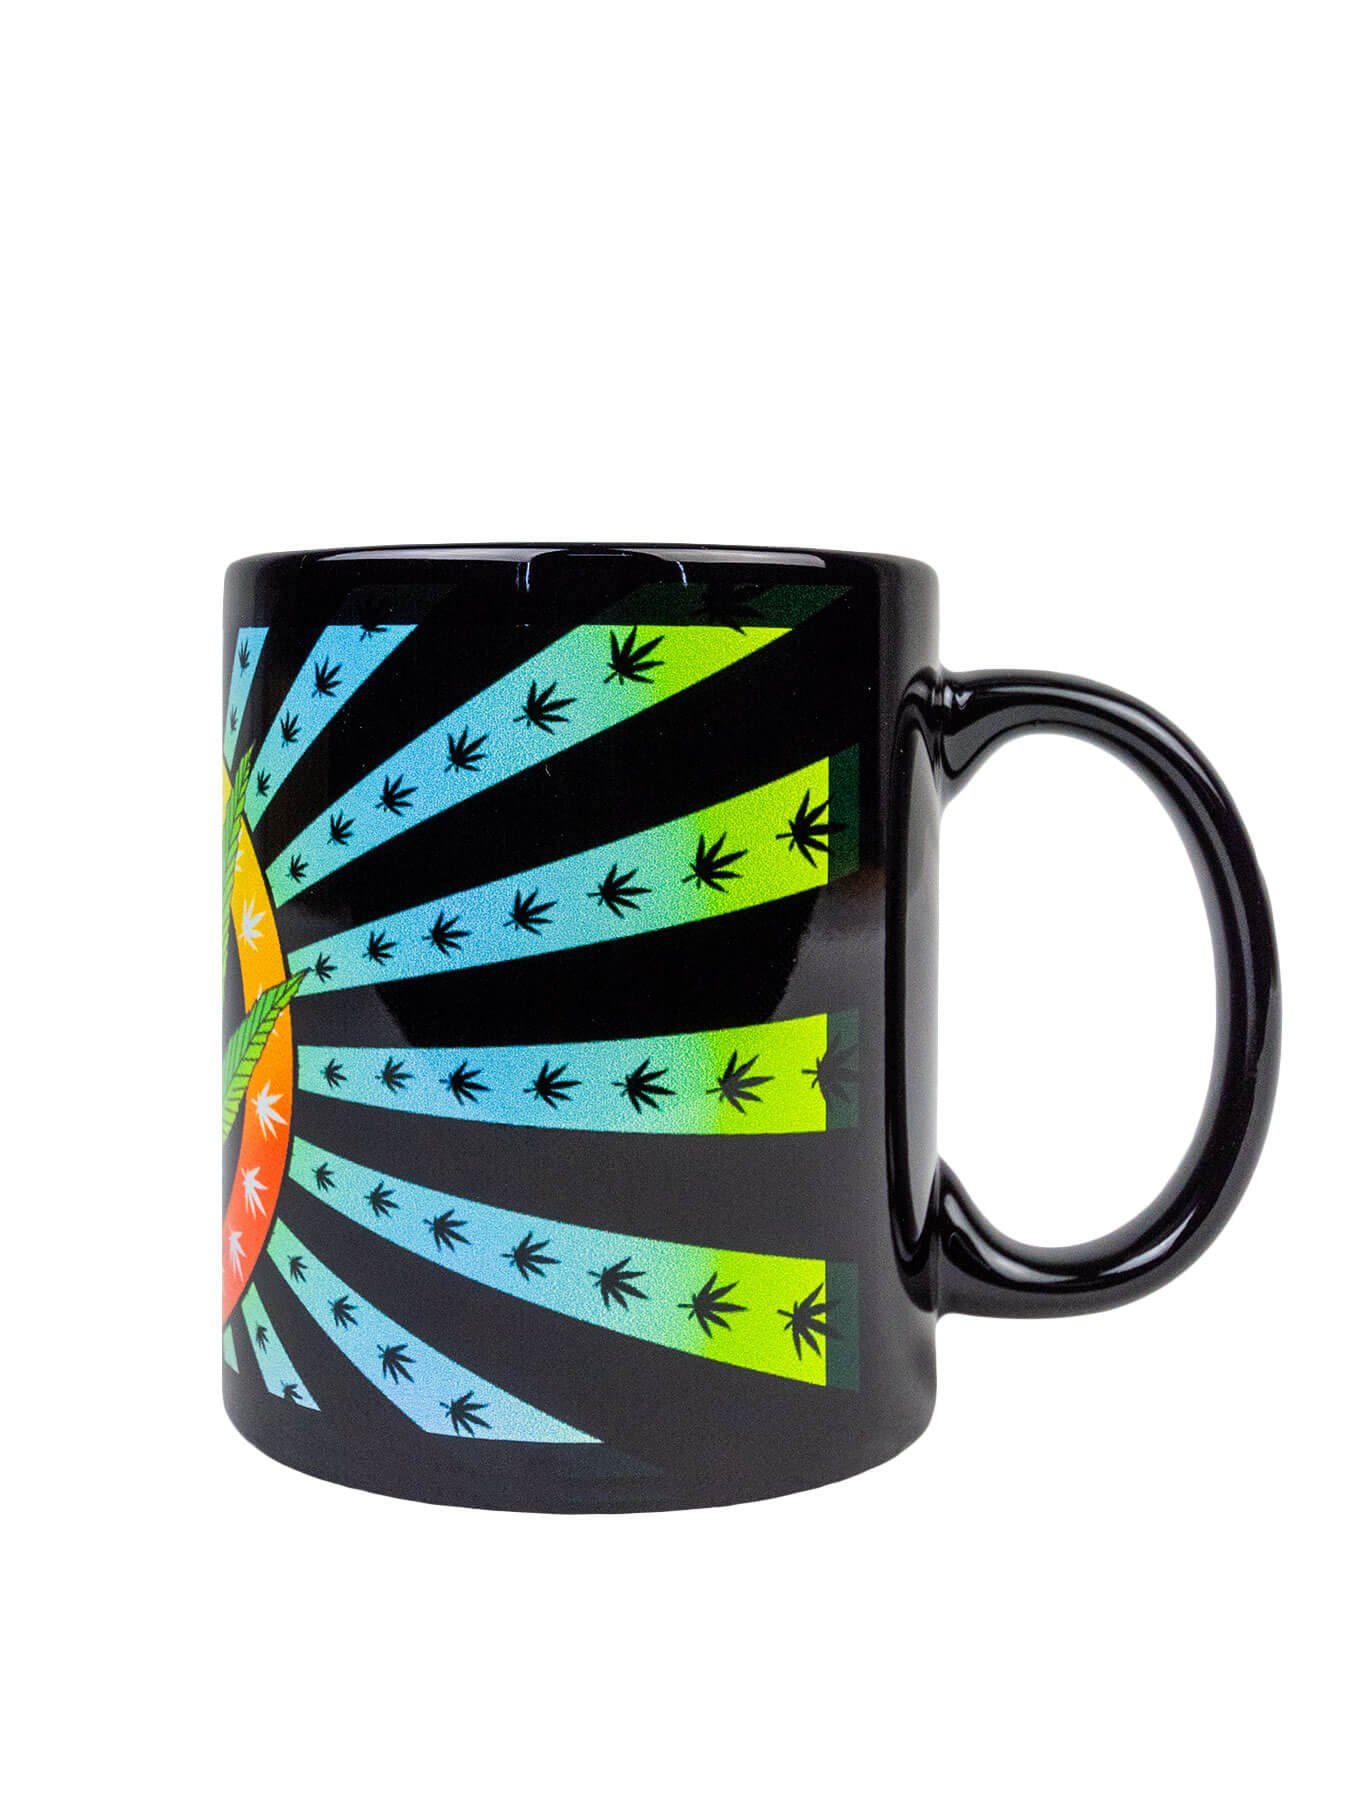 PSYWORK Tasse Fluo Cup Neon unter Tasse leuchtet Motiv Schwarzlicht Leaf", Keramik, UV-aktiv, "Weed